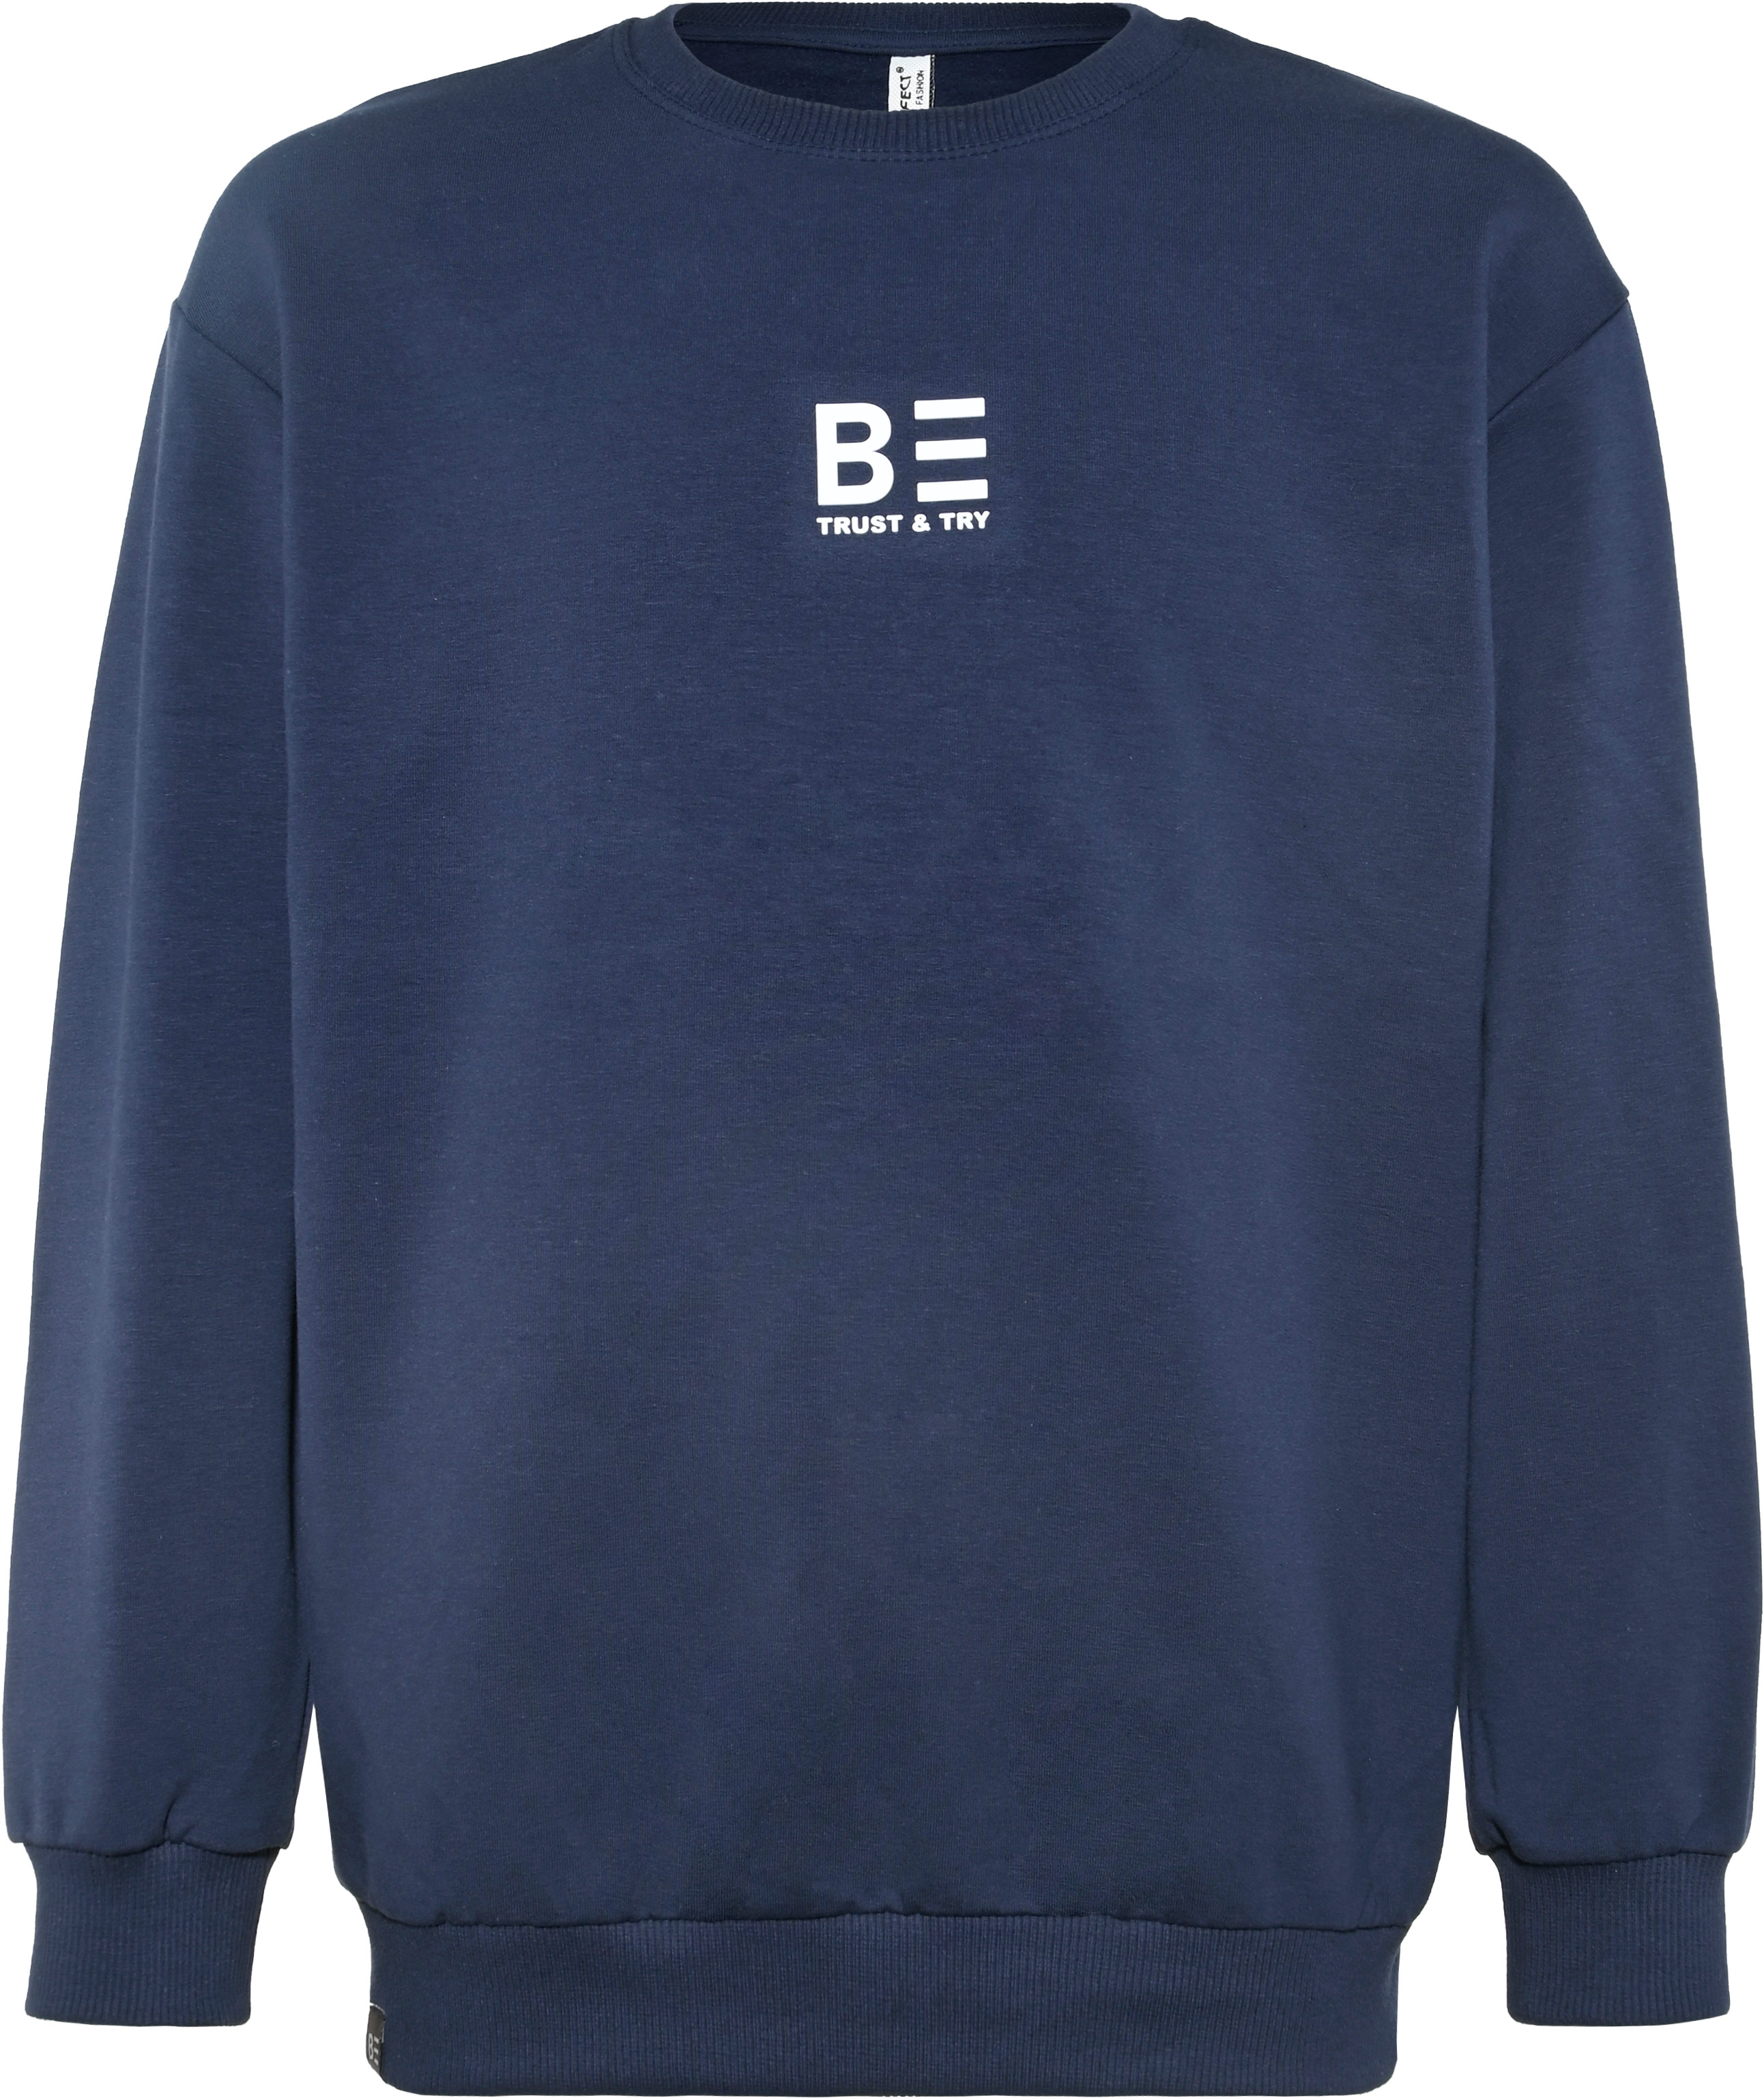 6323-Boys Oversized Sweatshirt -BE